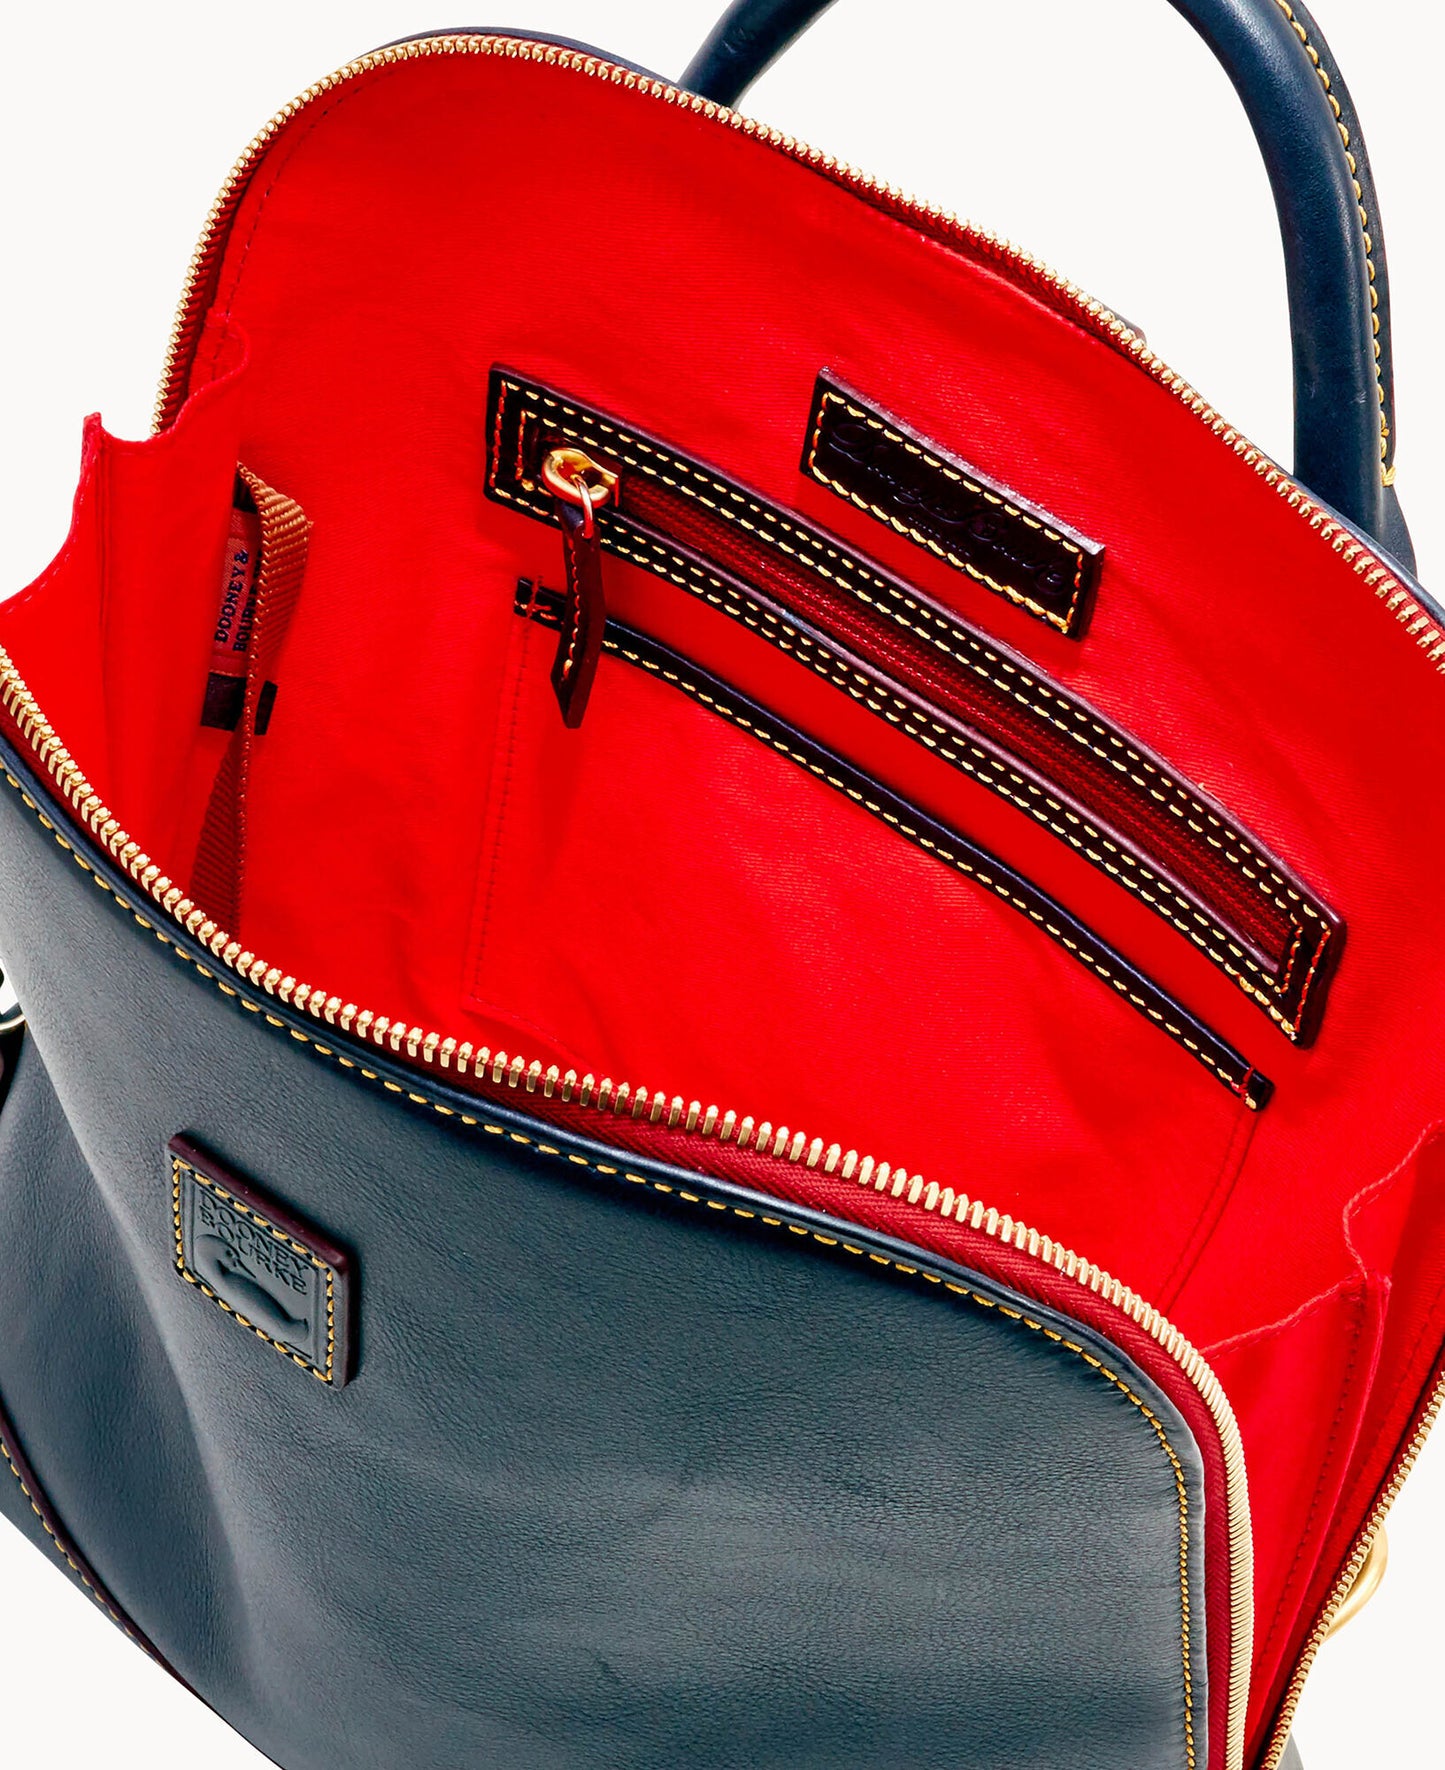 41. Authentic Dooney & Bourke Zip Pod Backpack with Wallet- $175